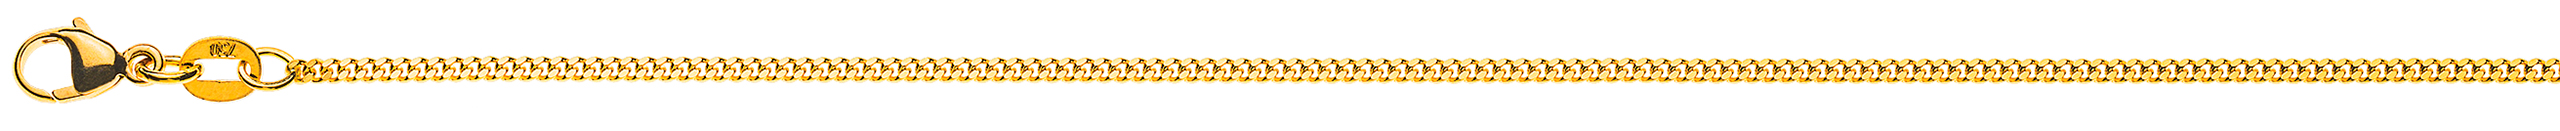 AURONOS Élégance Necklace yellow gold 14K curb chain polished 45cm 1.6mm